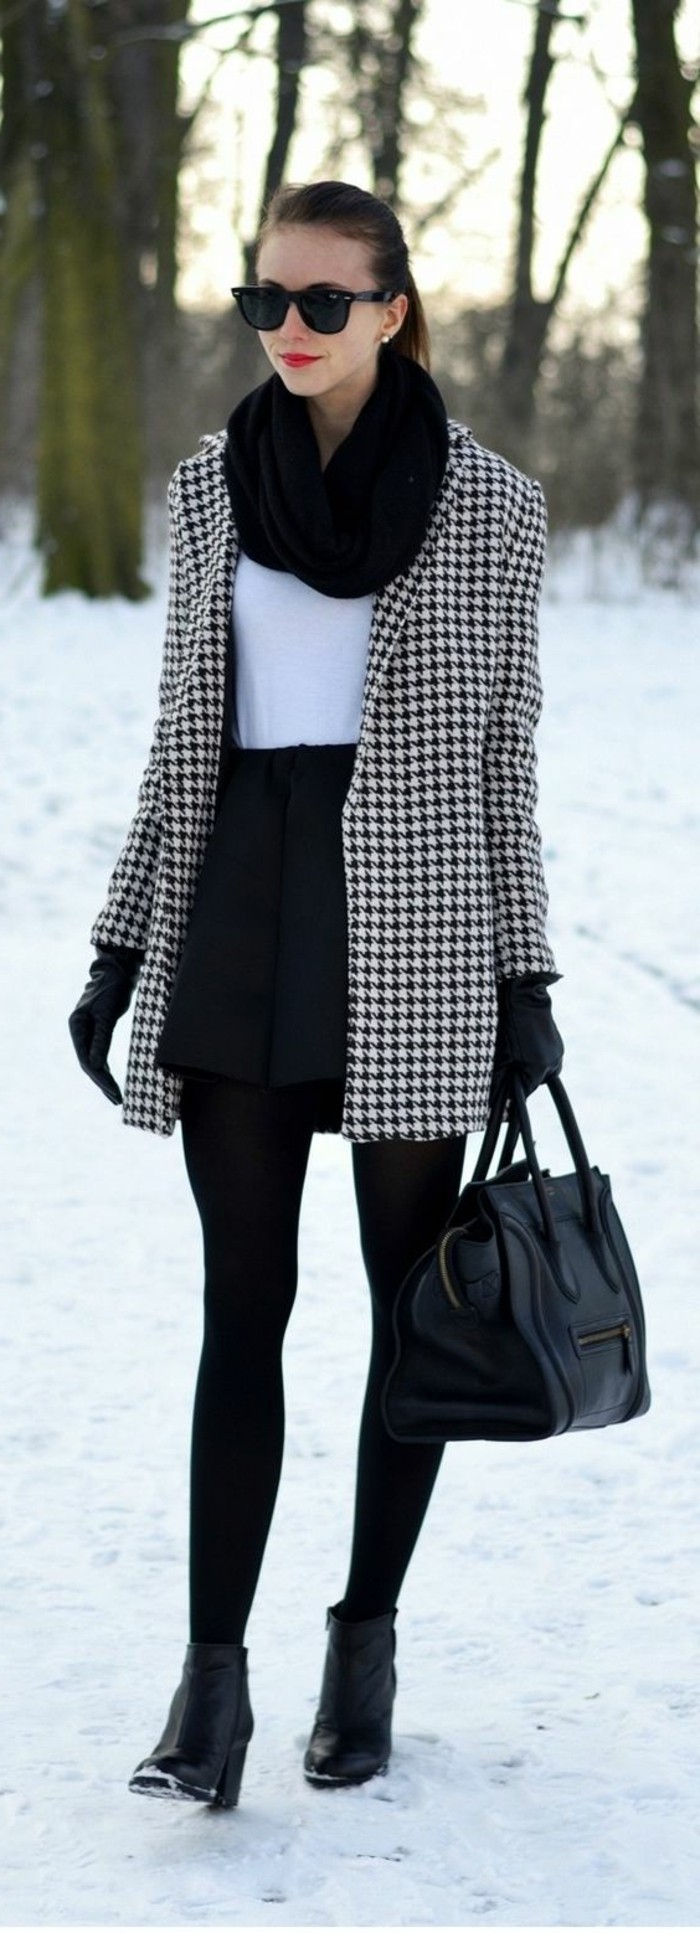 Choisir votre tenue d'hiver avec du style, mais comment?